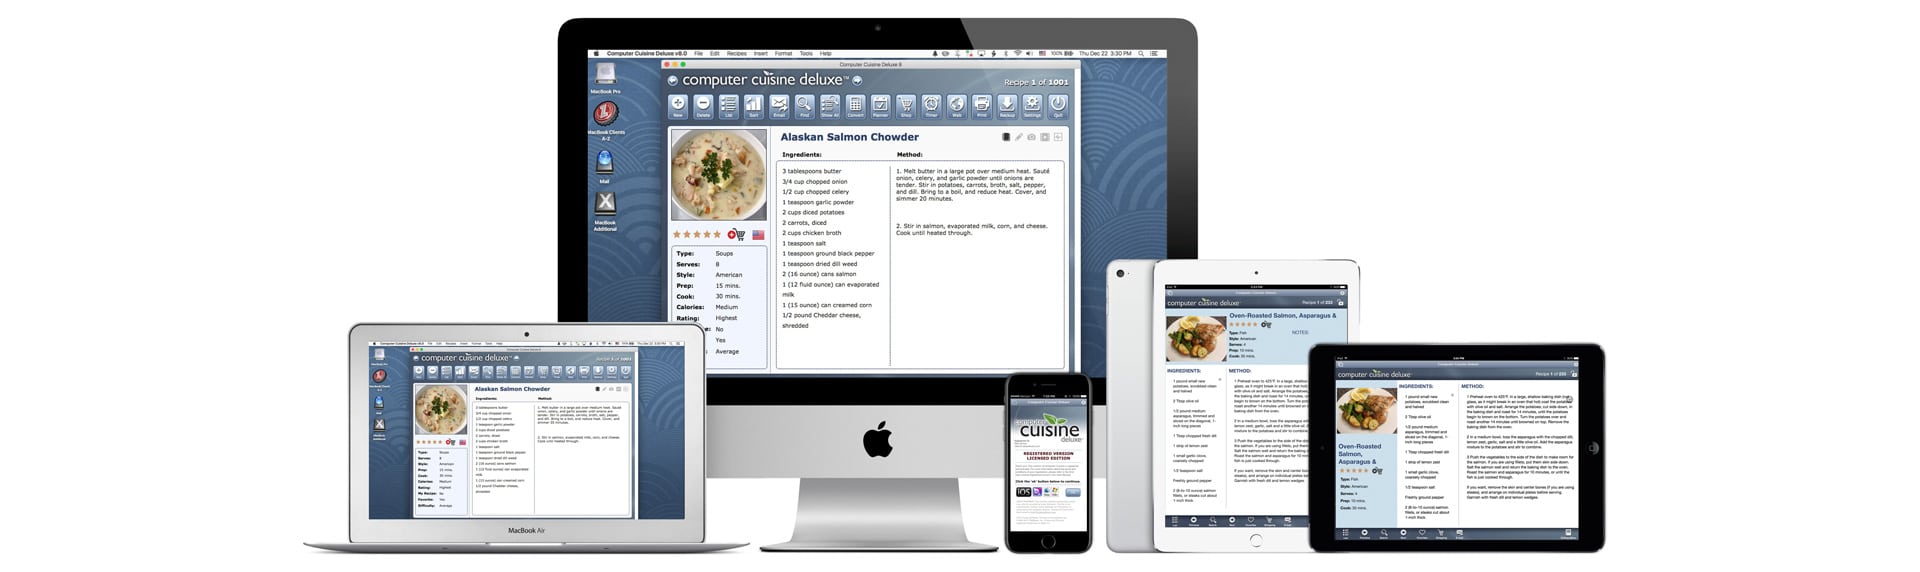 computer cuisine deluxe mac